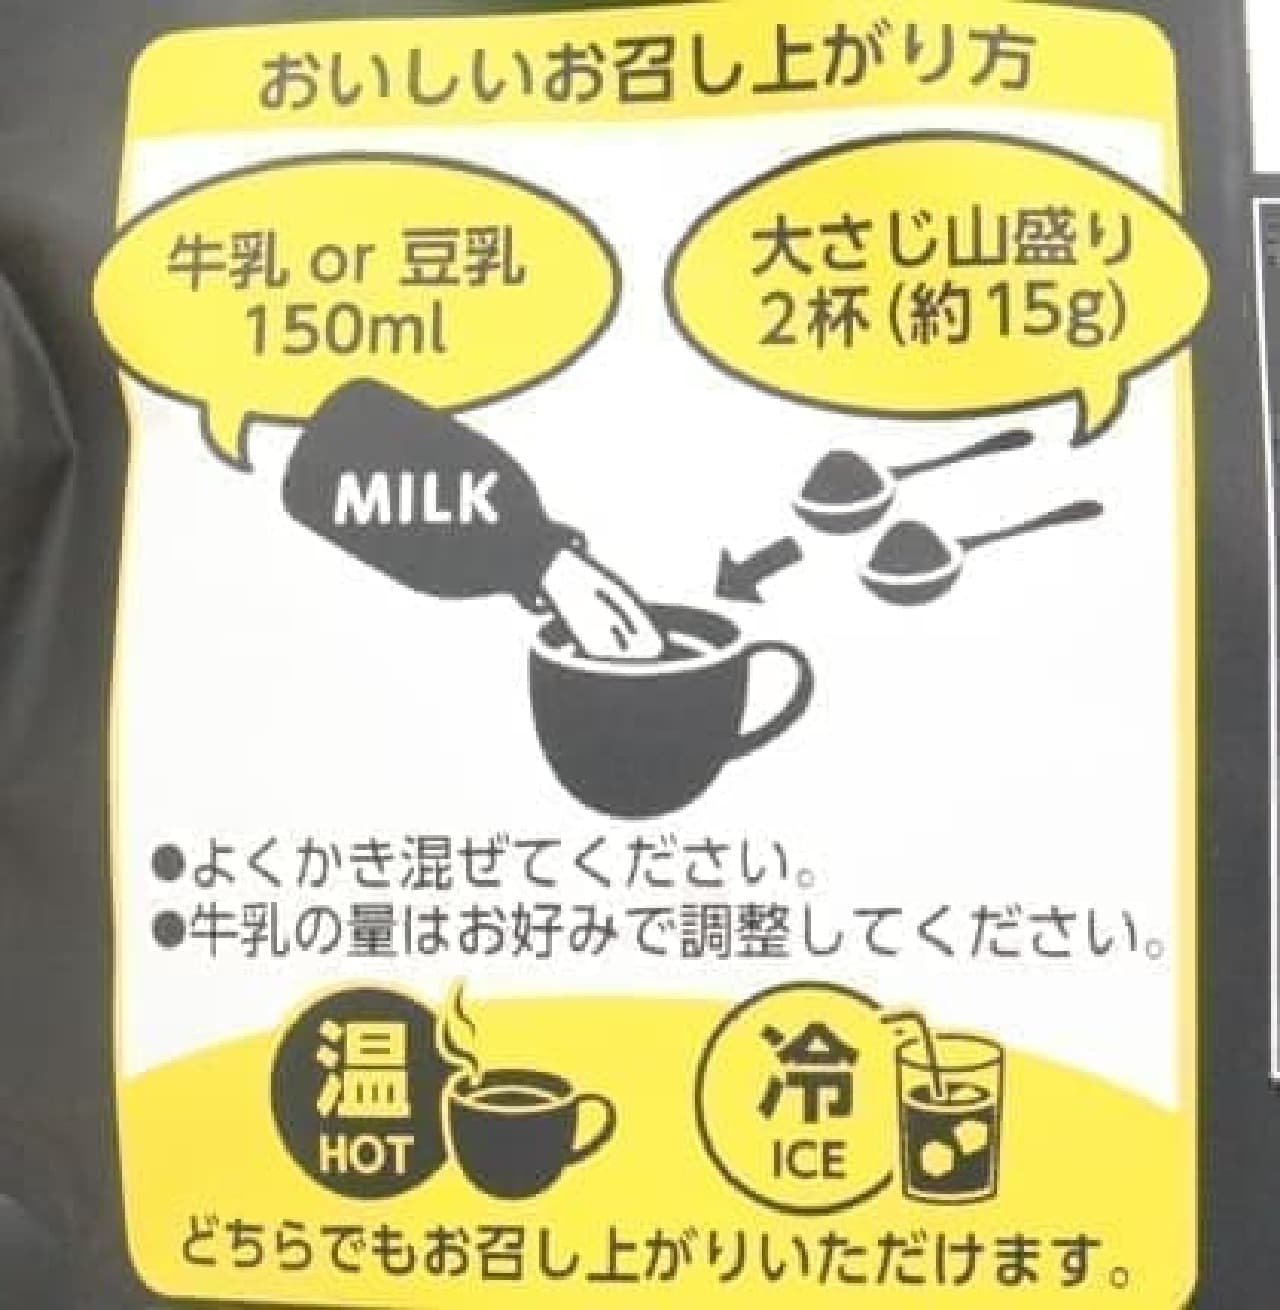 Kuki's black sesame latte